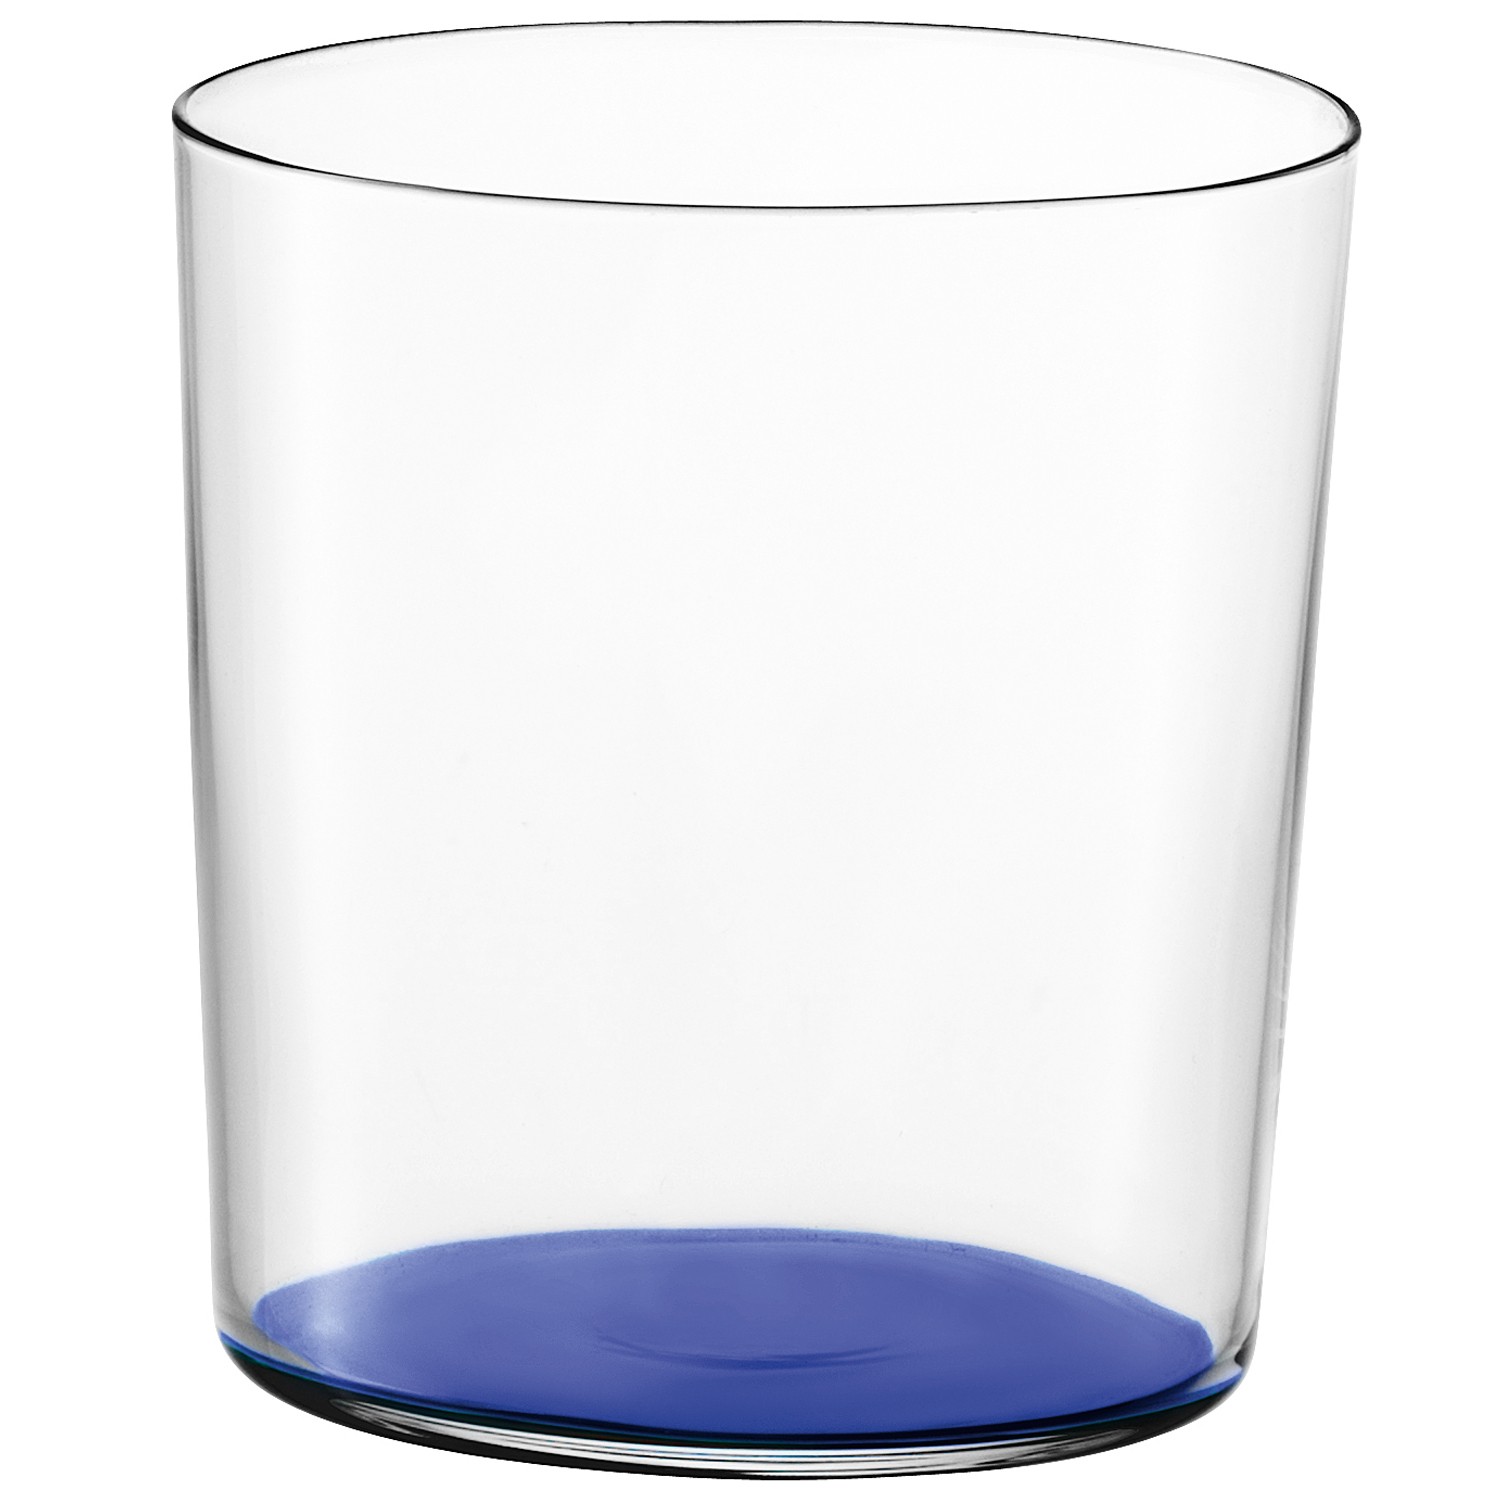 Gio bicchiere colorato 390ml Blu Scuro1